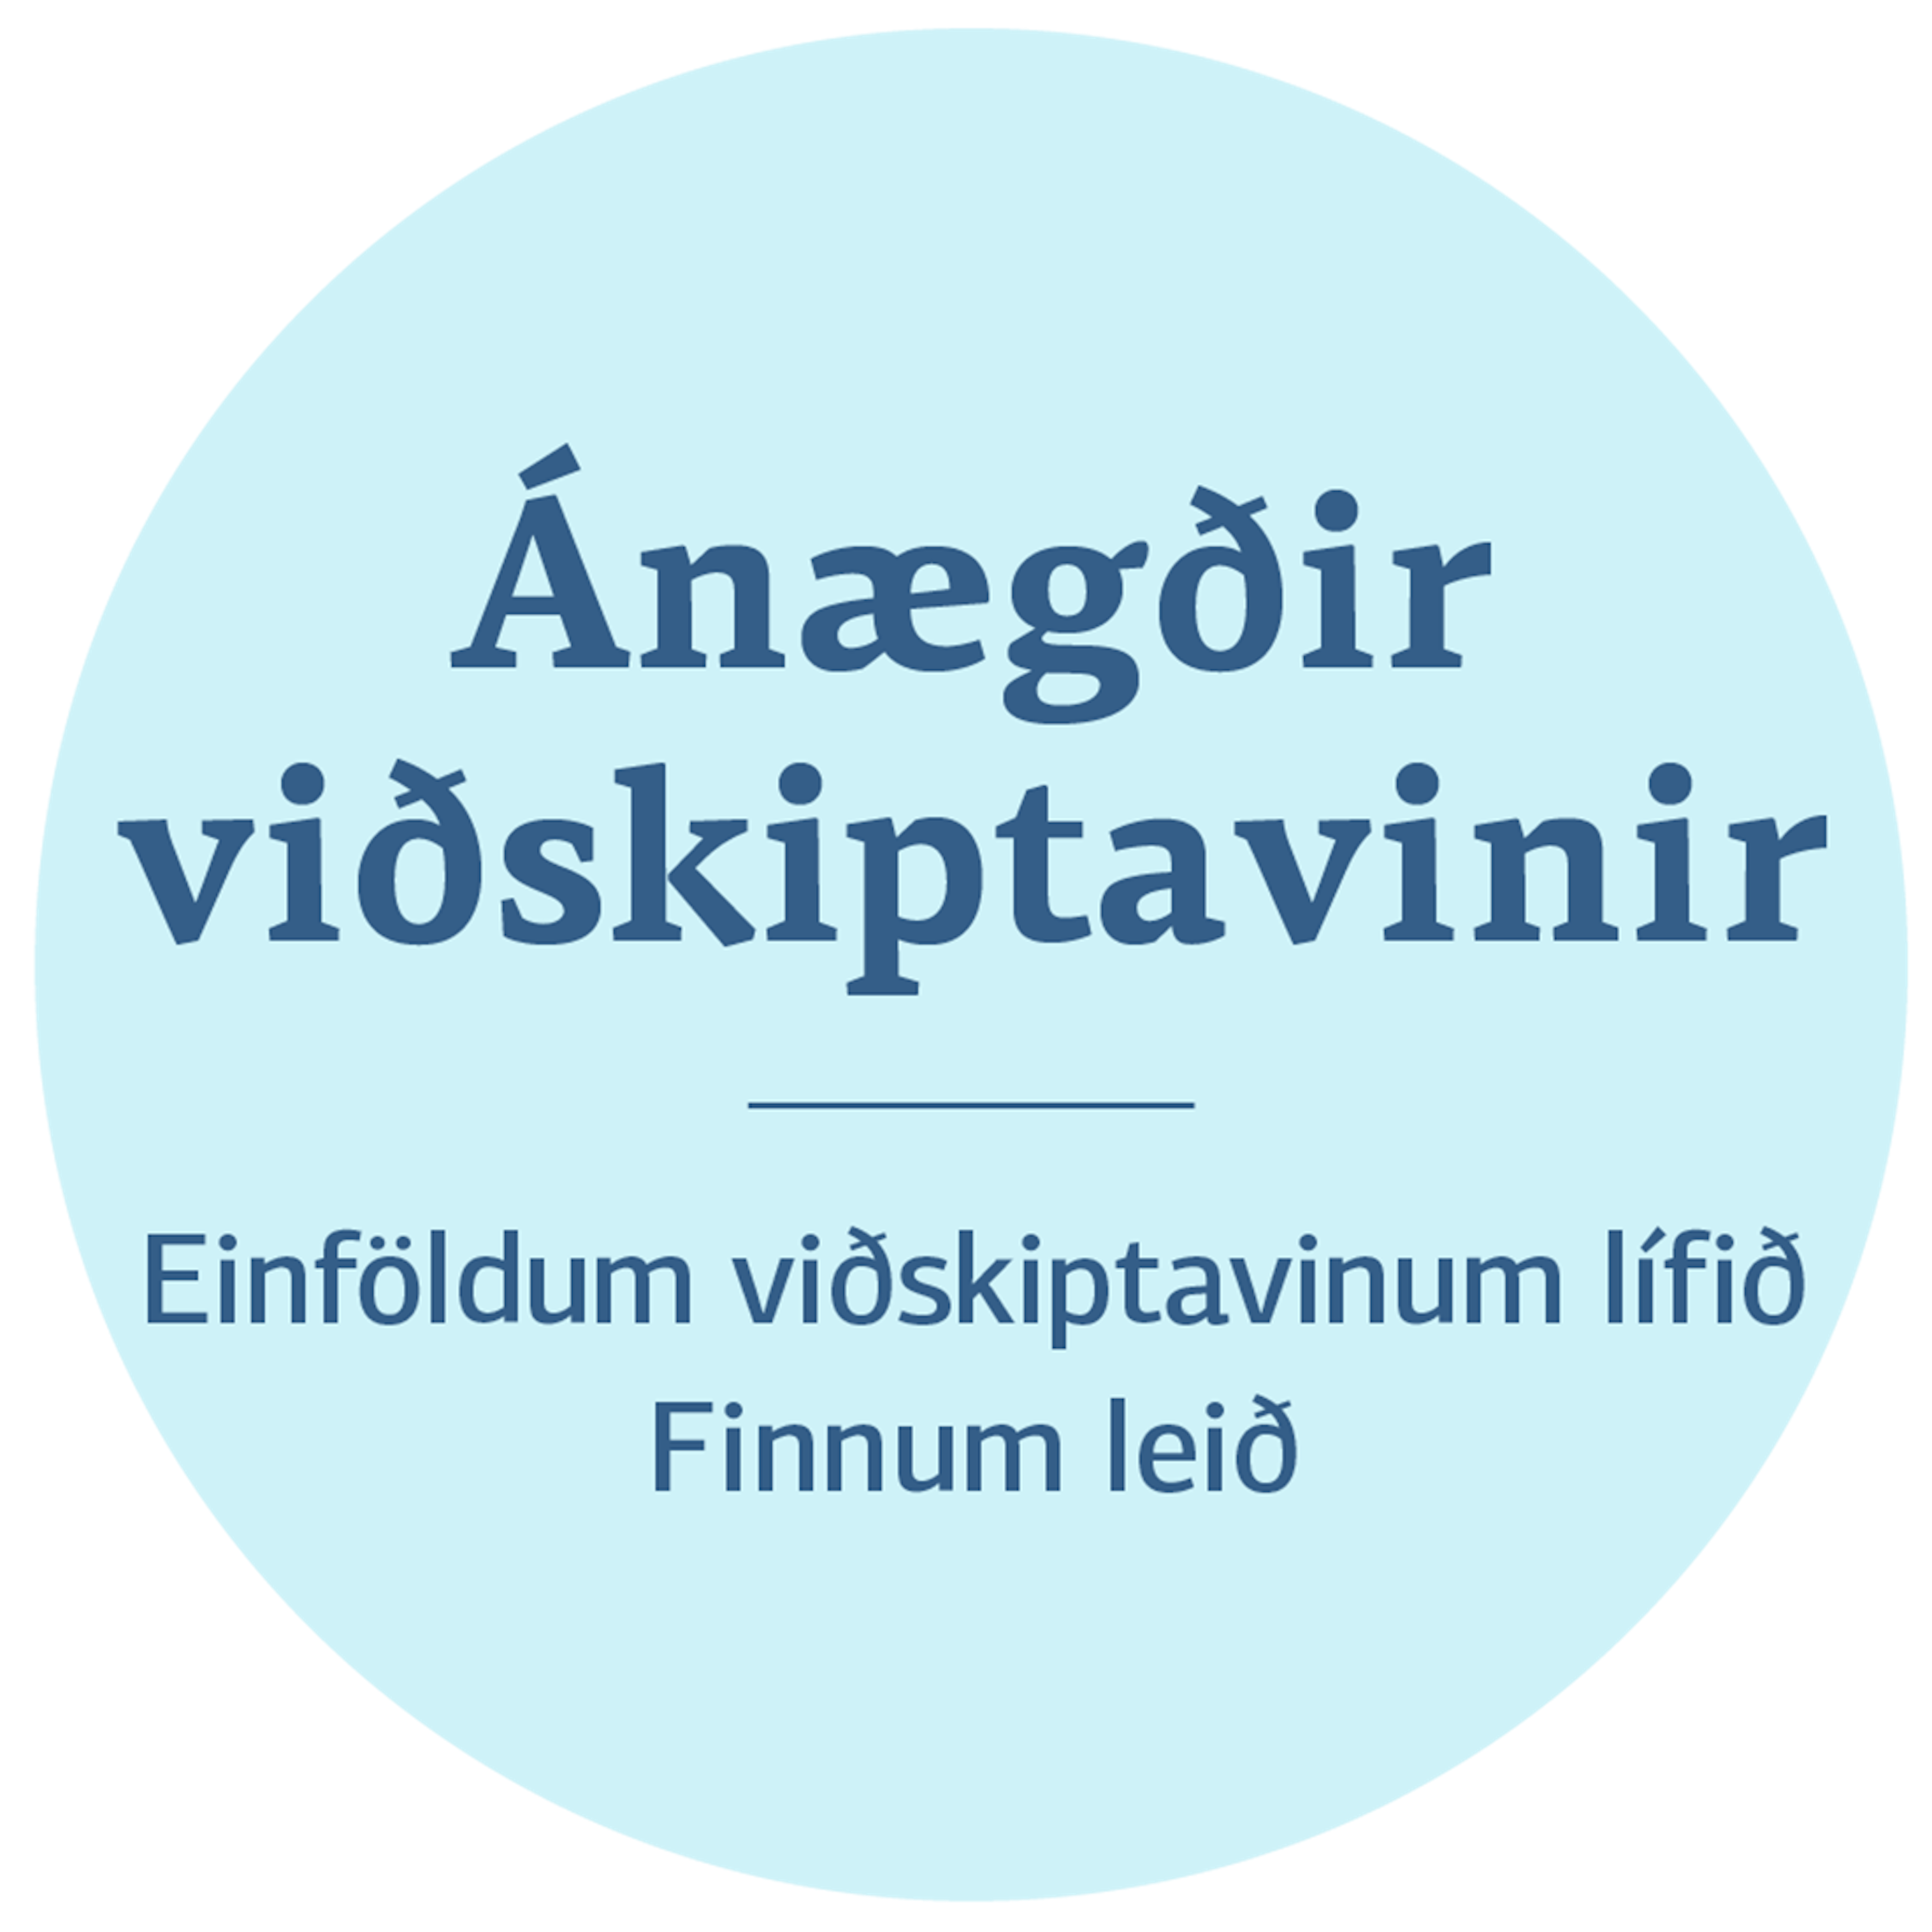 Stefnustoð 2: Ánægðir viðskiptavinir